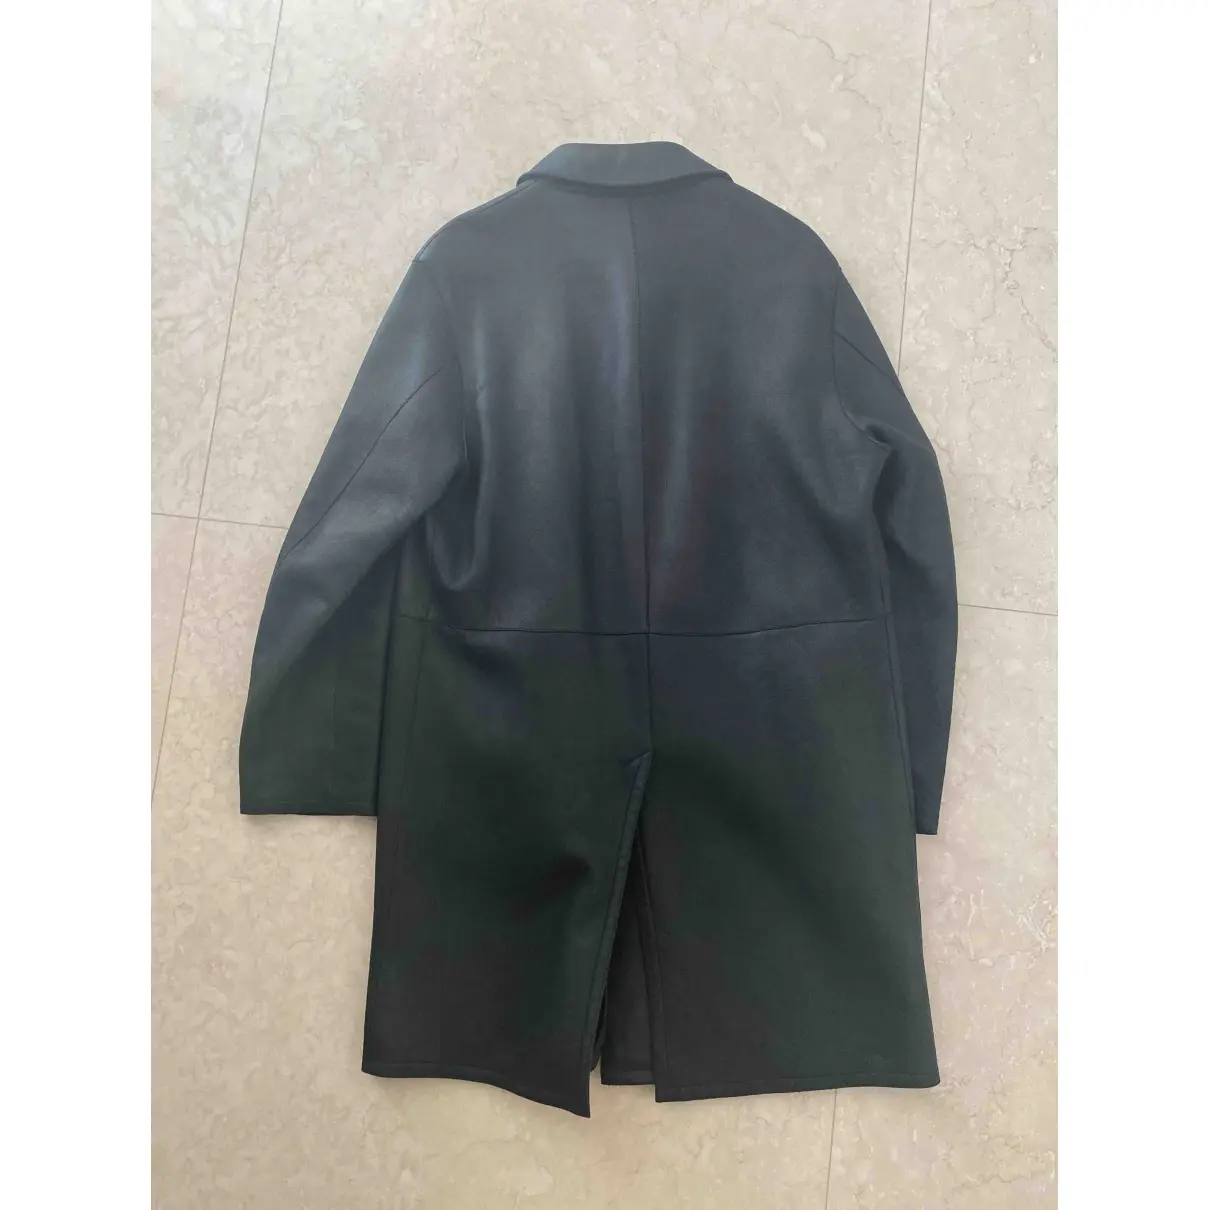 Buy Boss Leather dufflecoat online